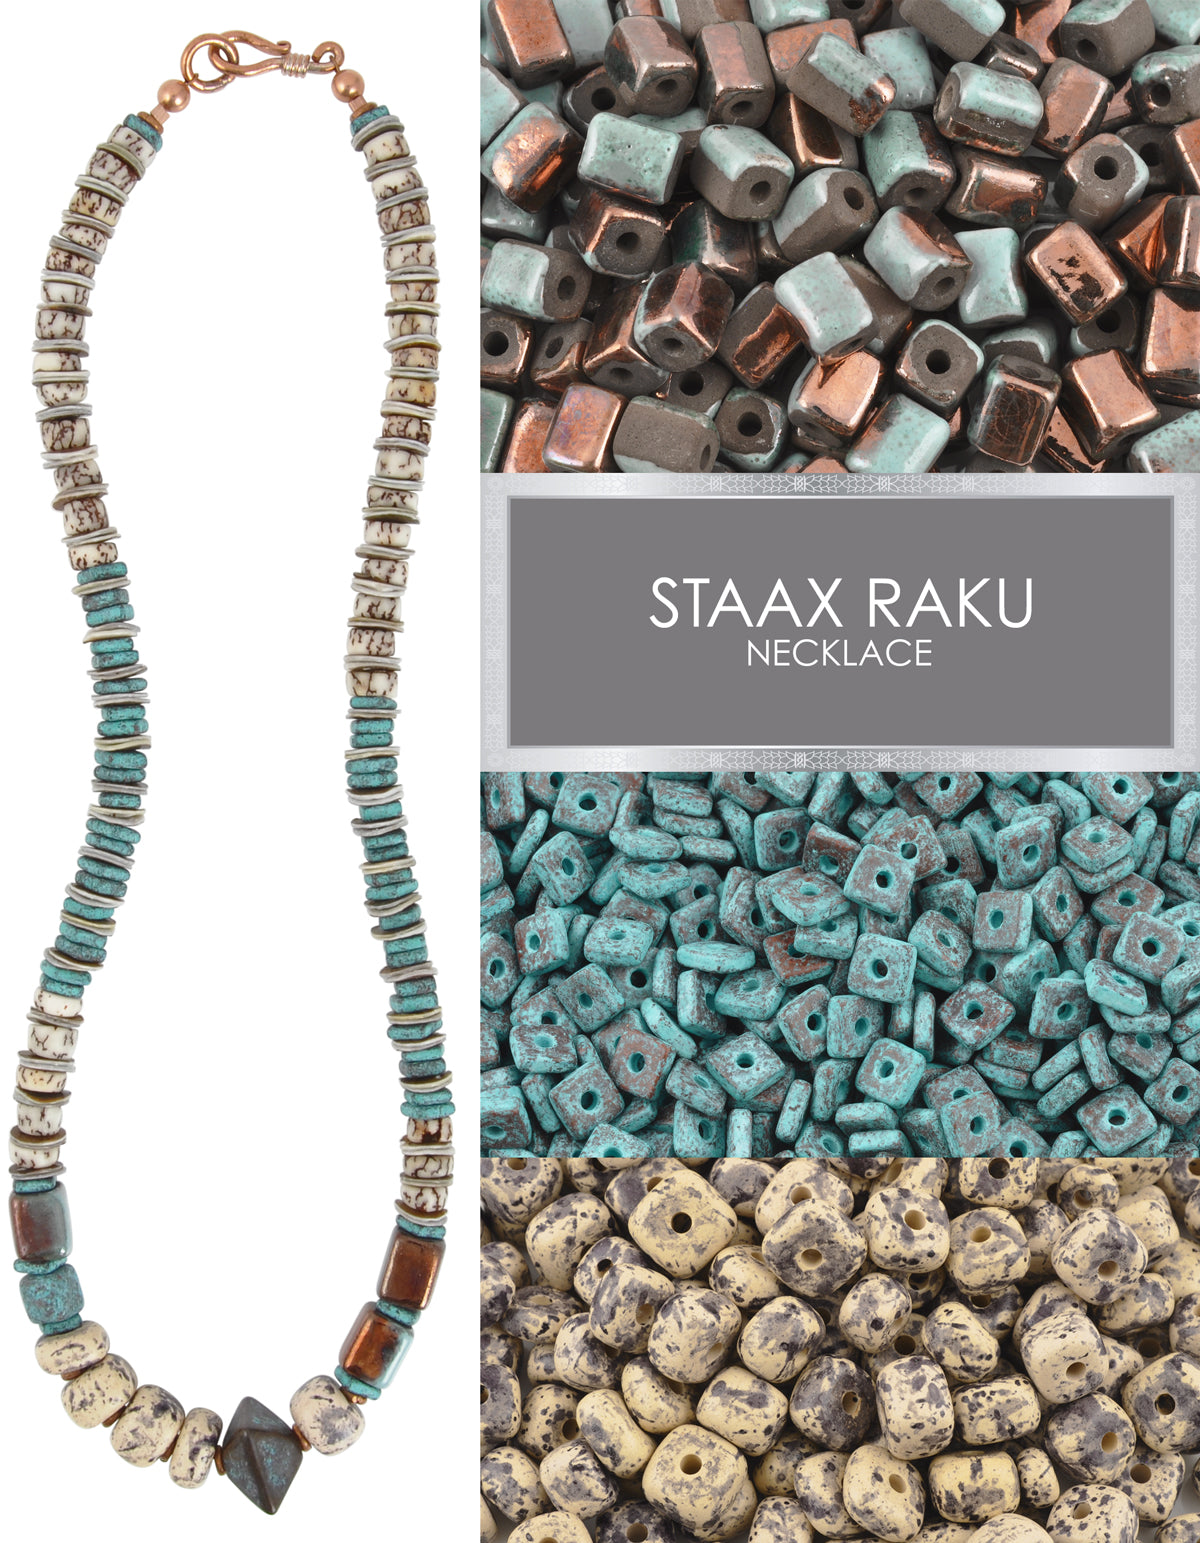 Staax Raku Necklace Blog Tamara Scott Designs